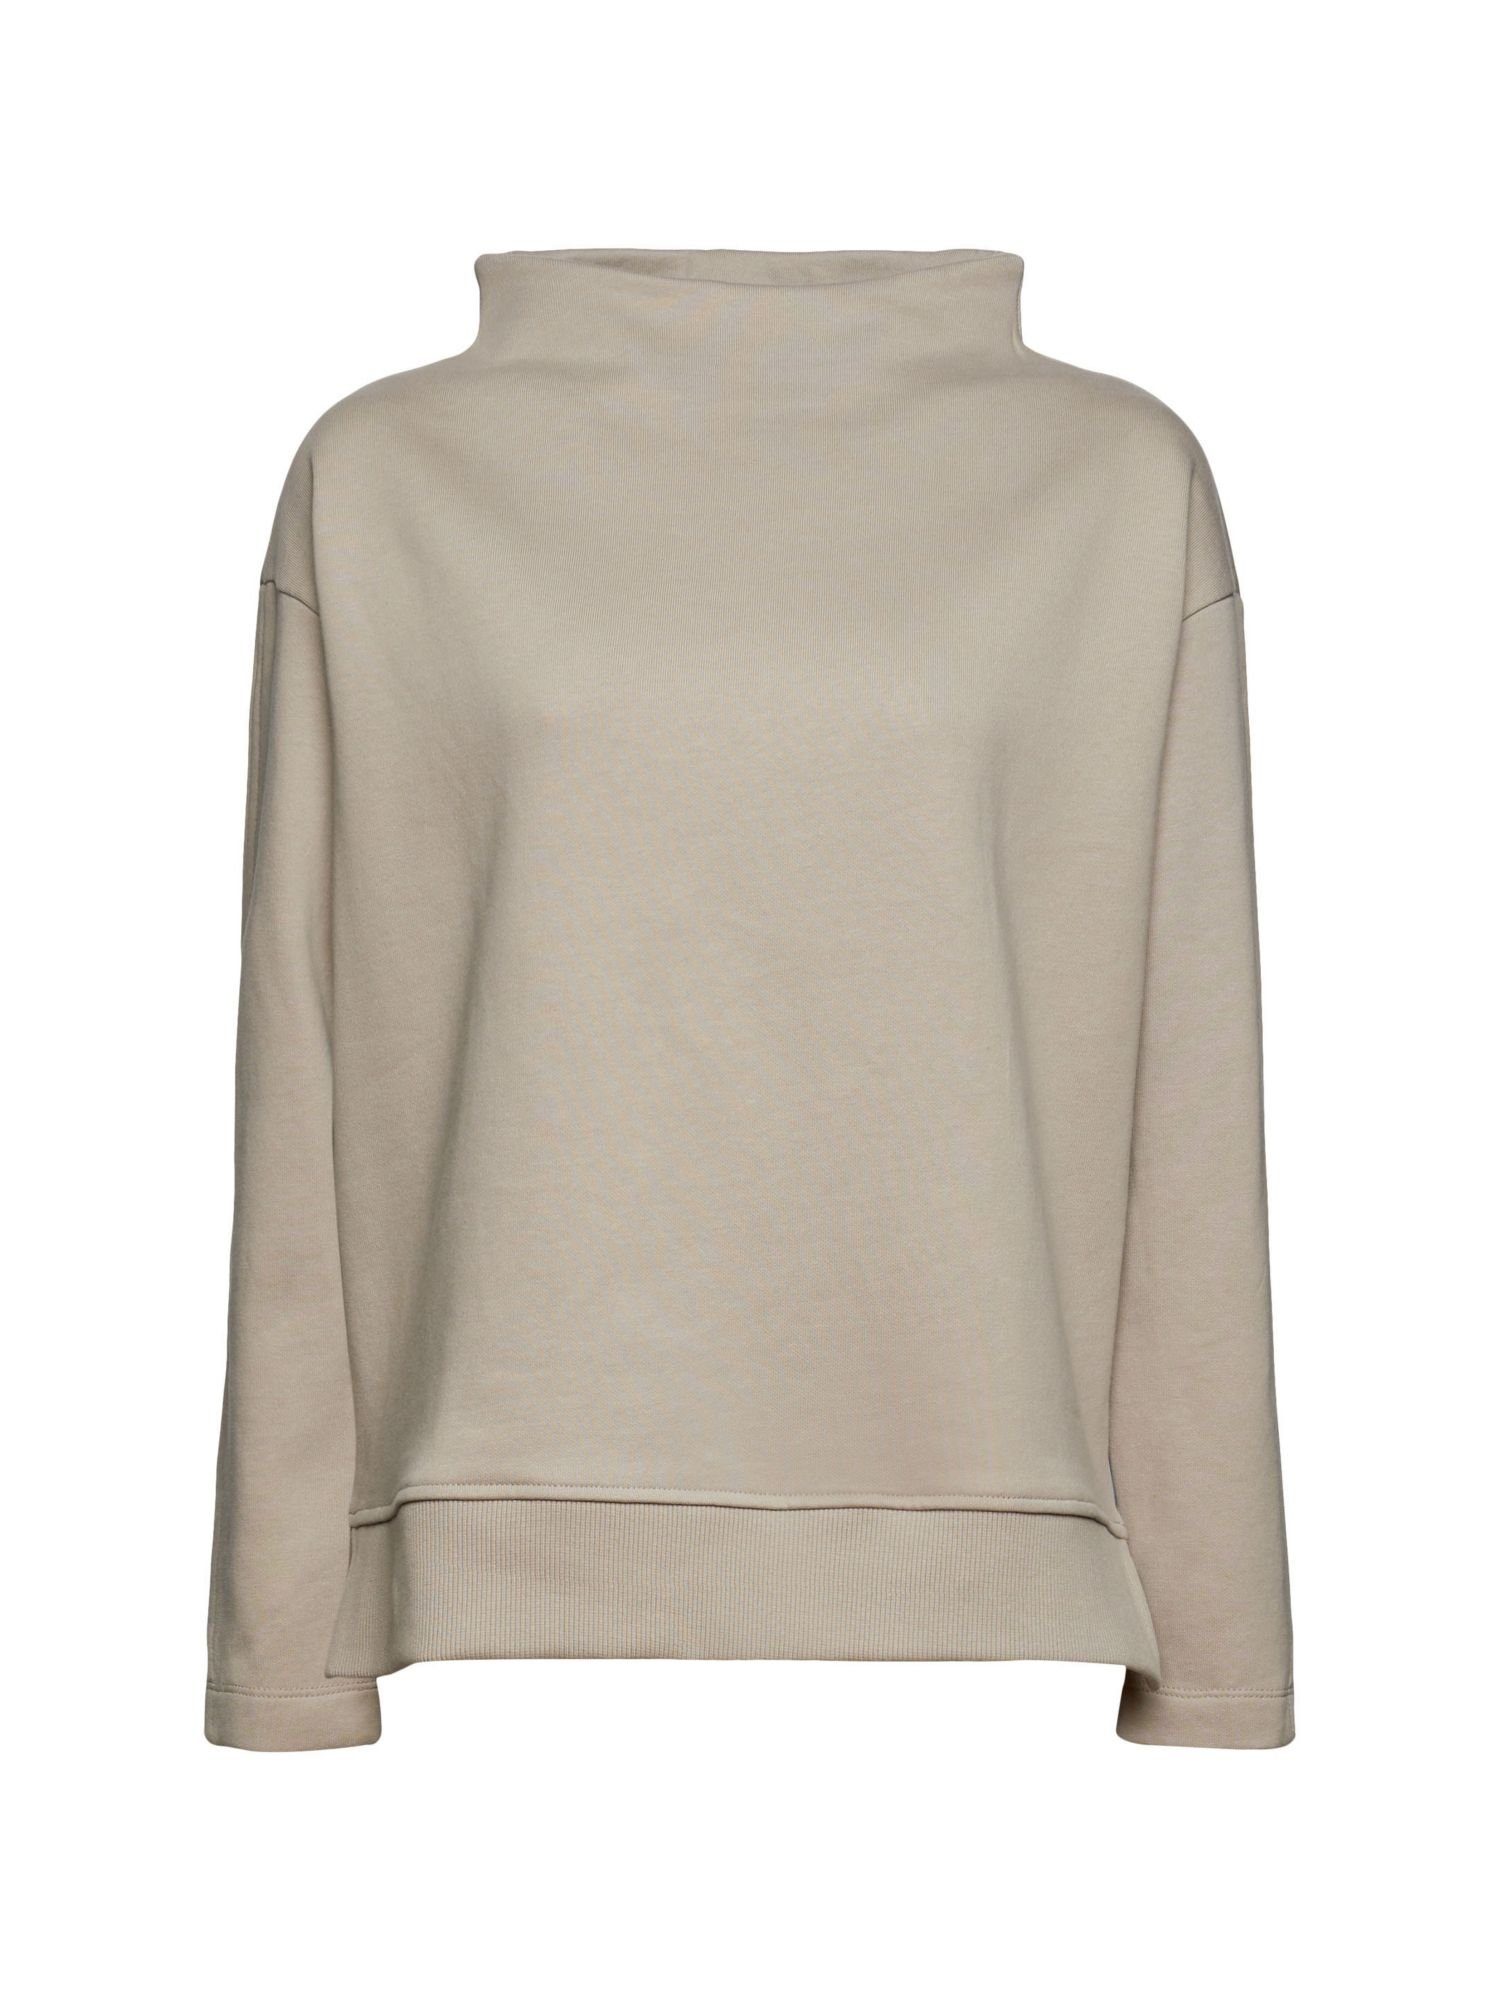 Esprit Damen Pullover online kaufen | OTTO